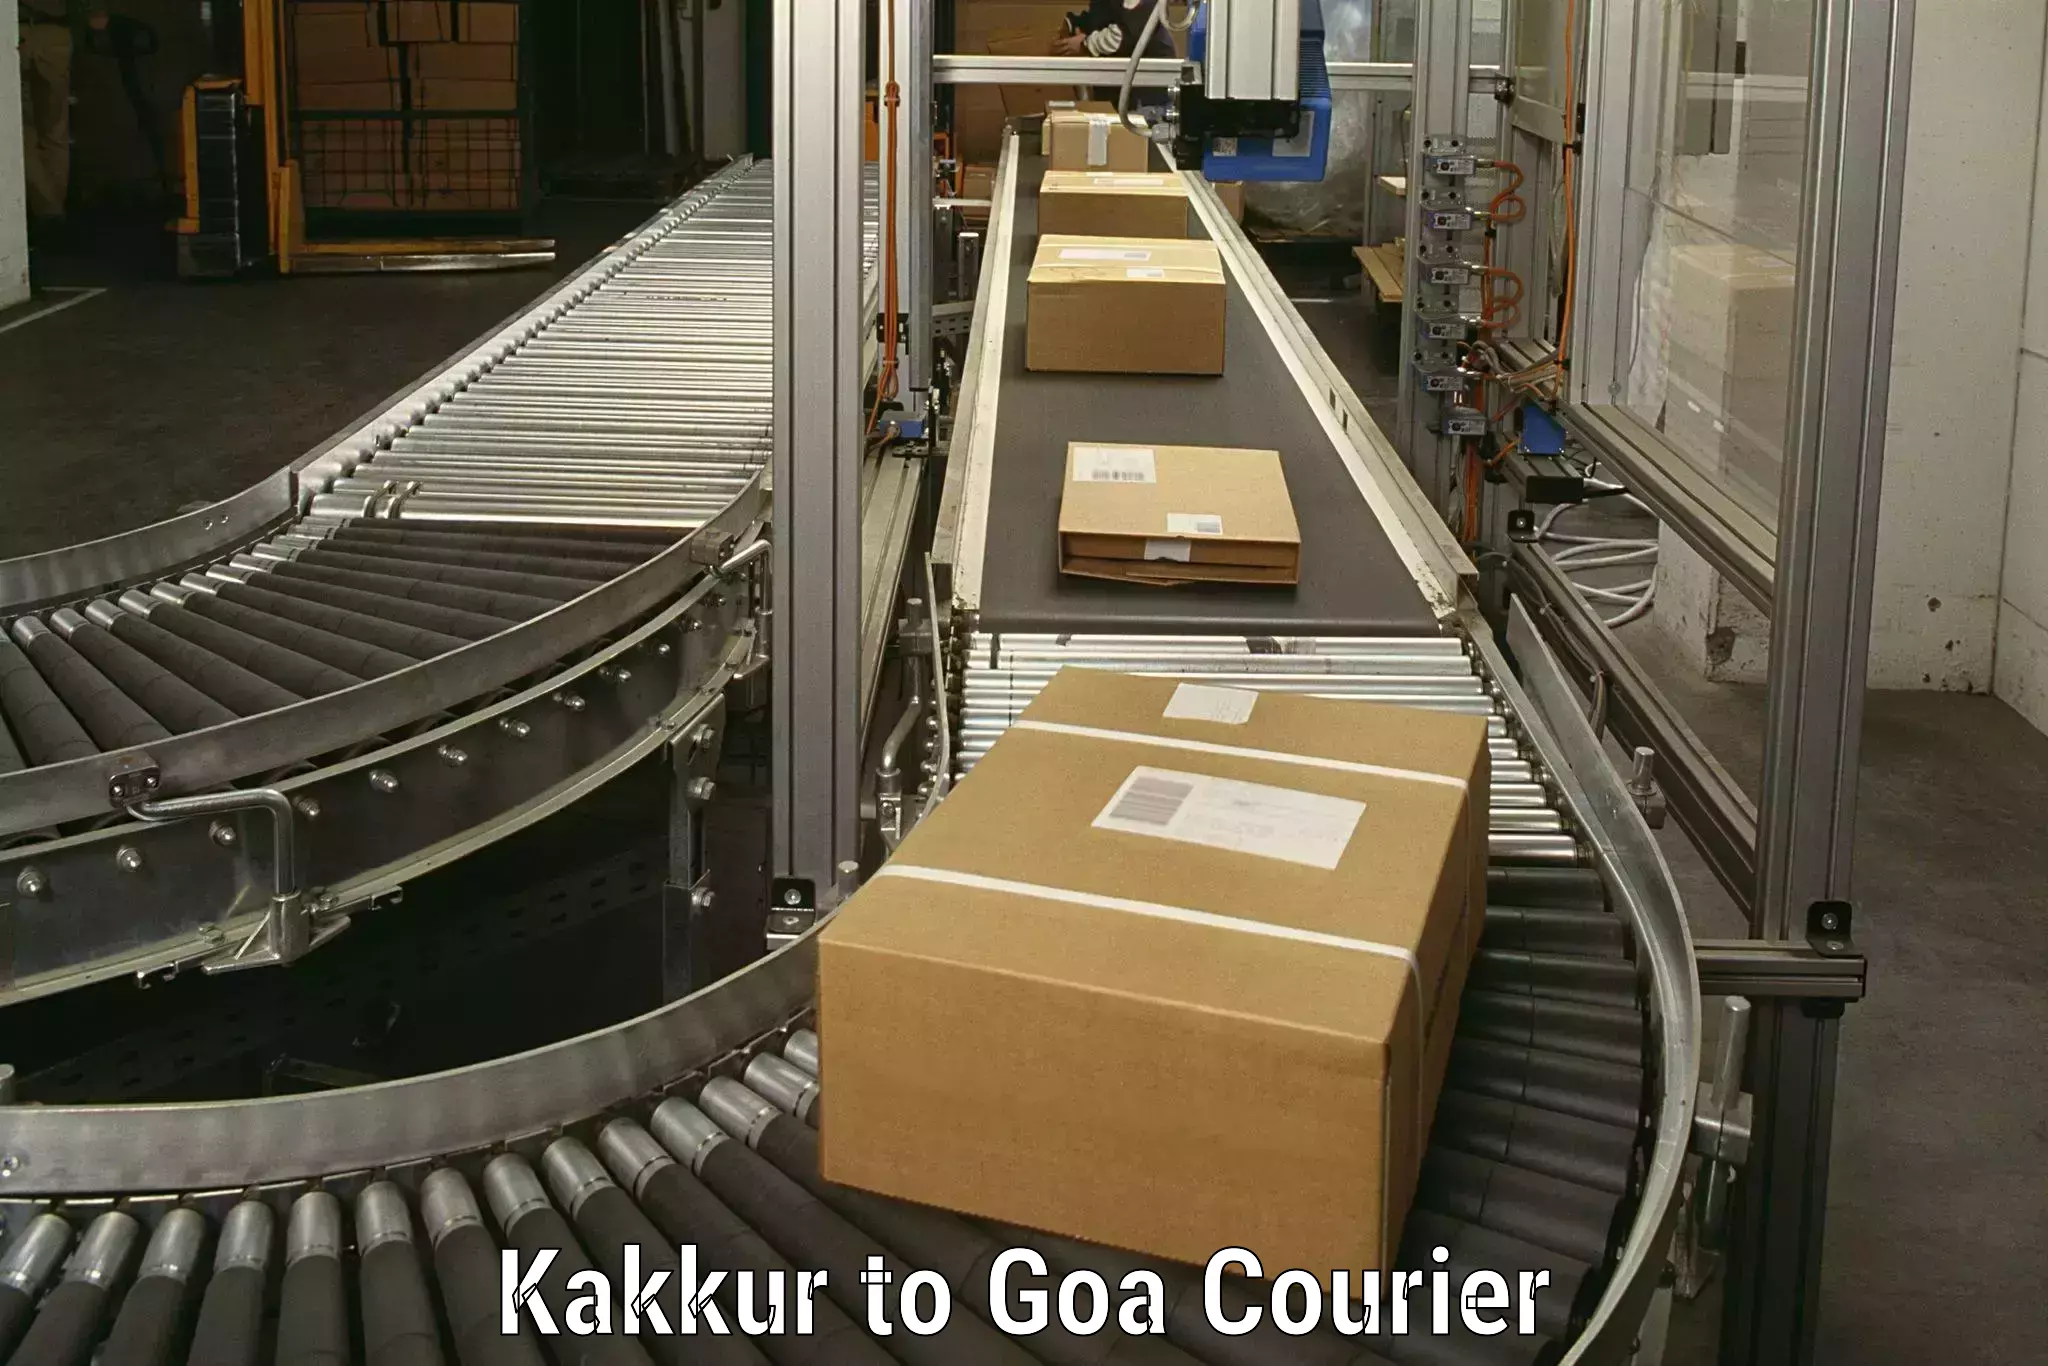 Safe household movers Kakkur to Goa